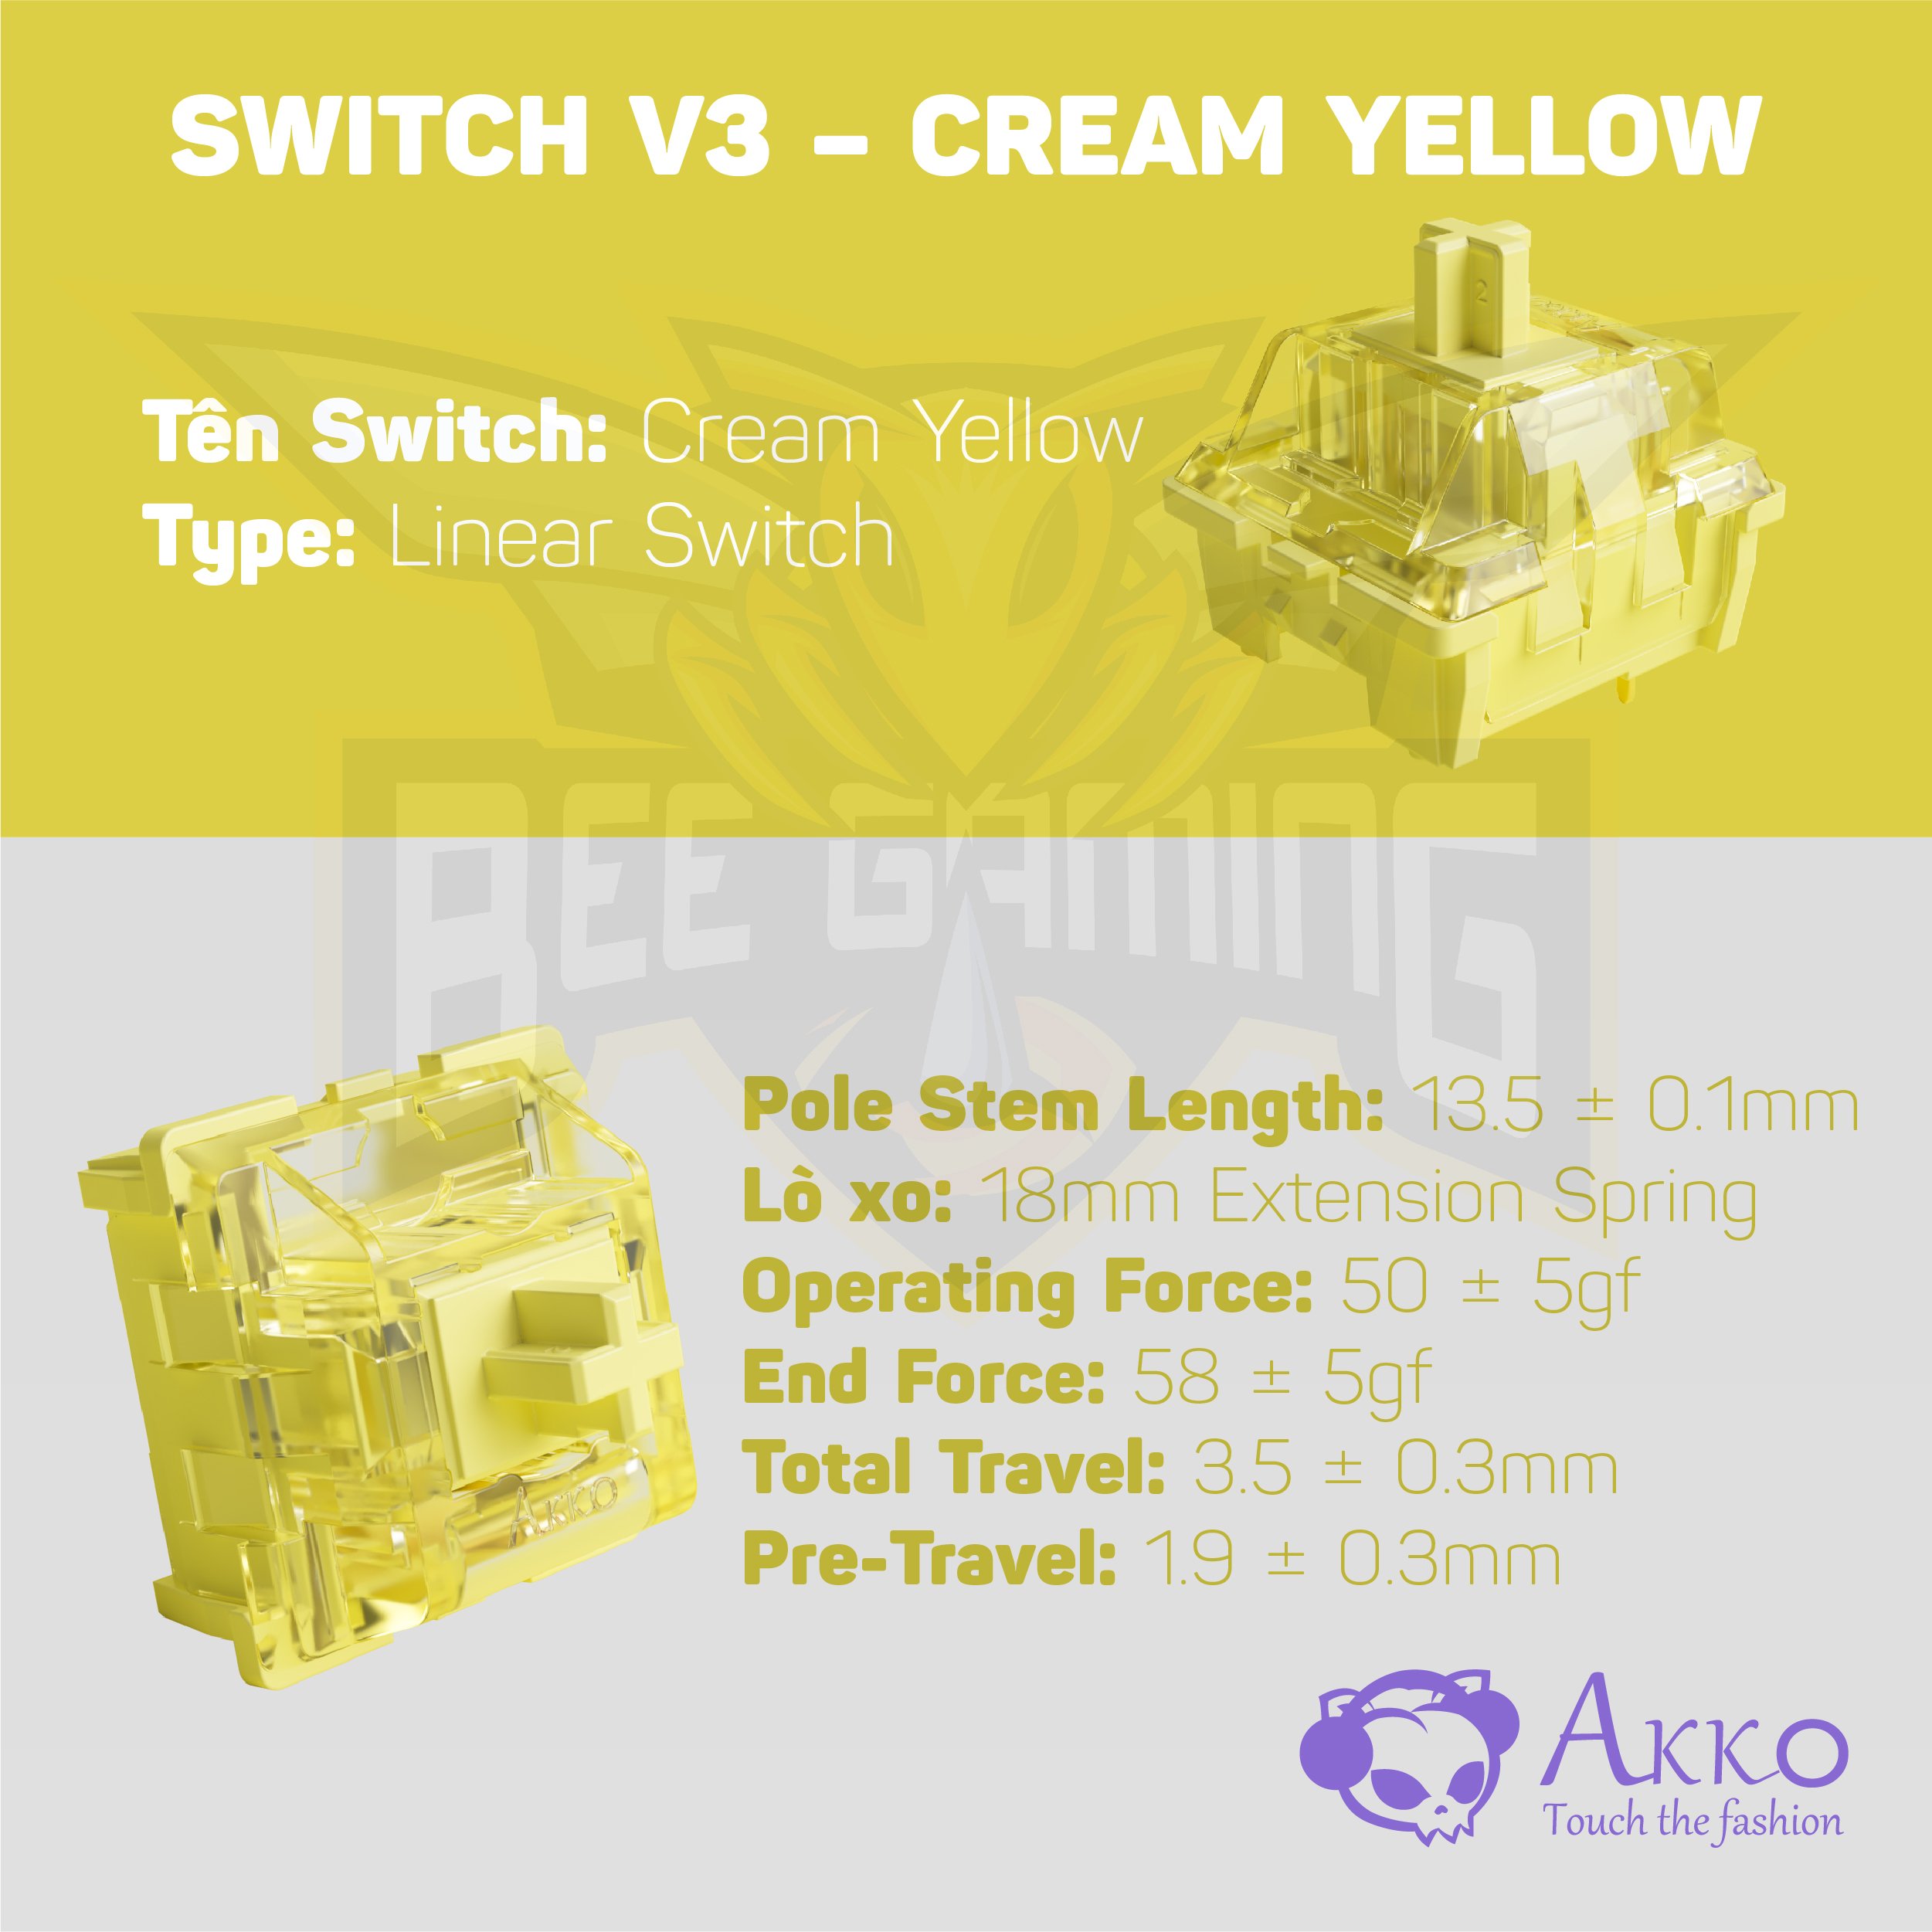 Bàn phím cơ AKKO 3108 World Tour Tokyo (108 nút / AKKO Switch v3) - Hàng chính hãng lỗi 1 đổi 1 trong 12 tháng